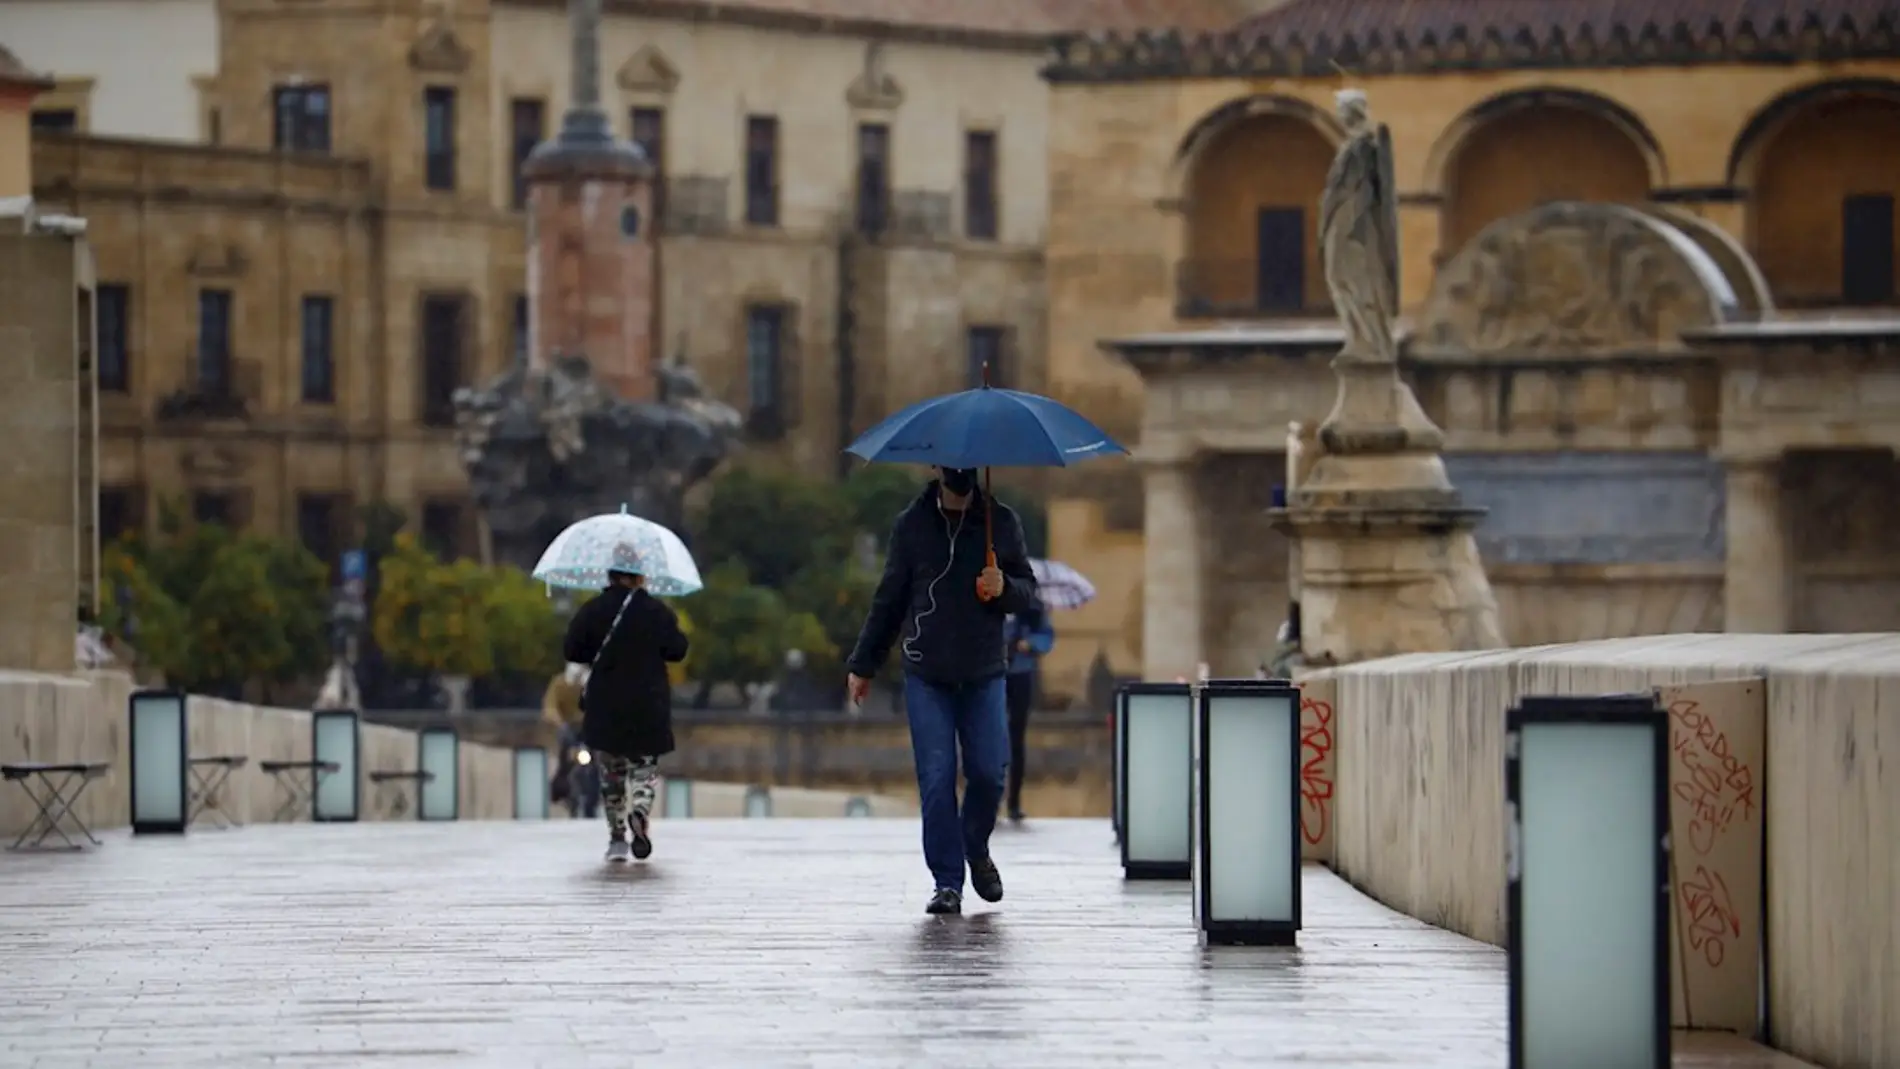 Imagen de archivo de dos personas paseando bajo la lluvia en Córdoba